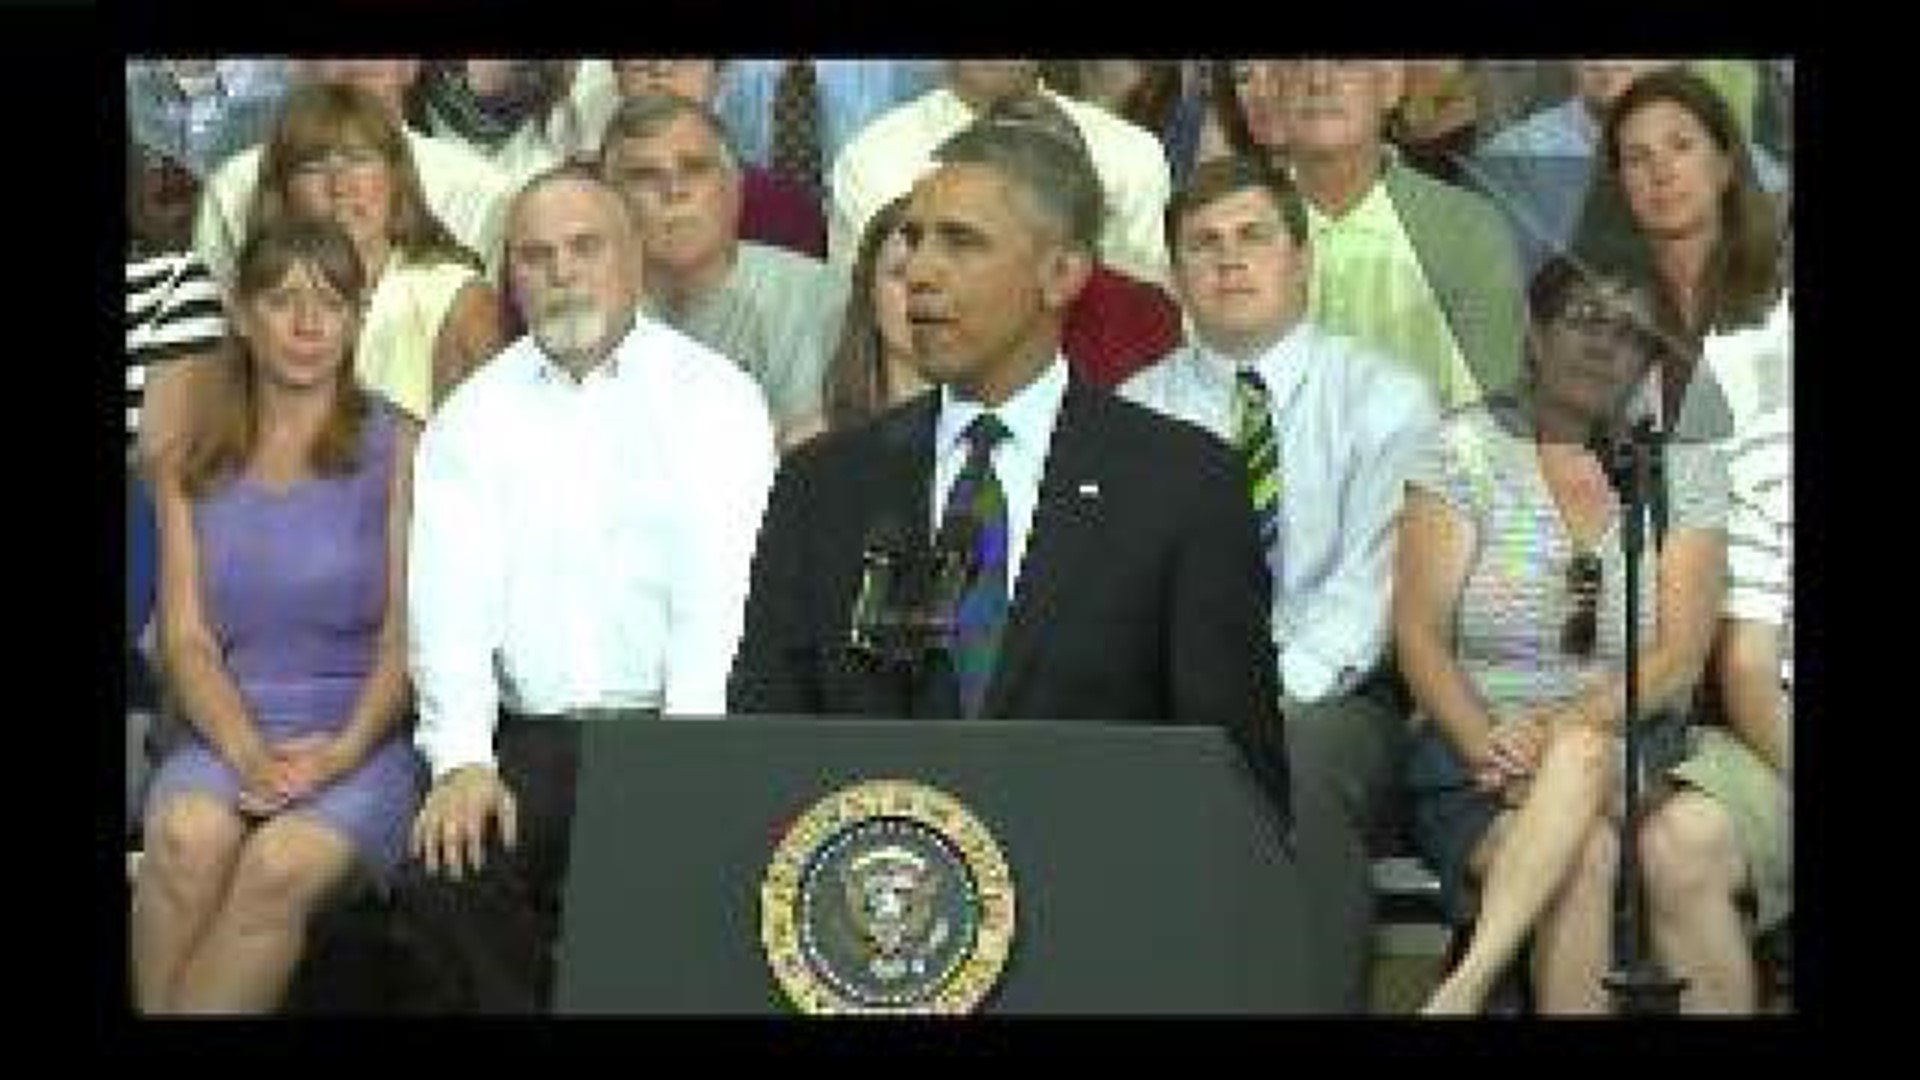 President Obama speaks in Galesburg - clip 3 of 7